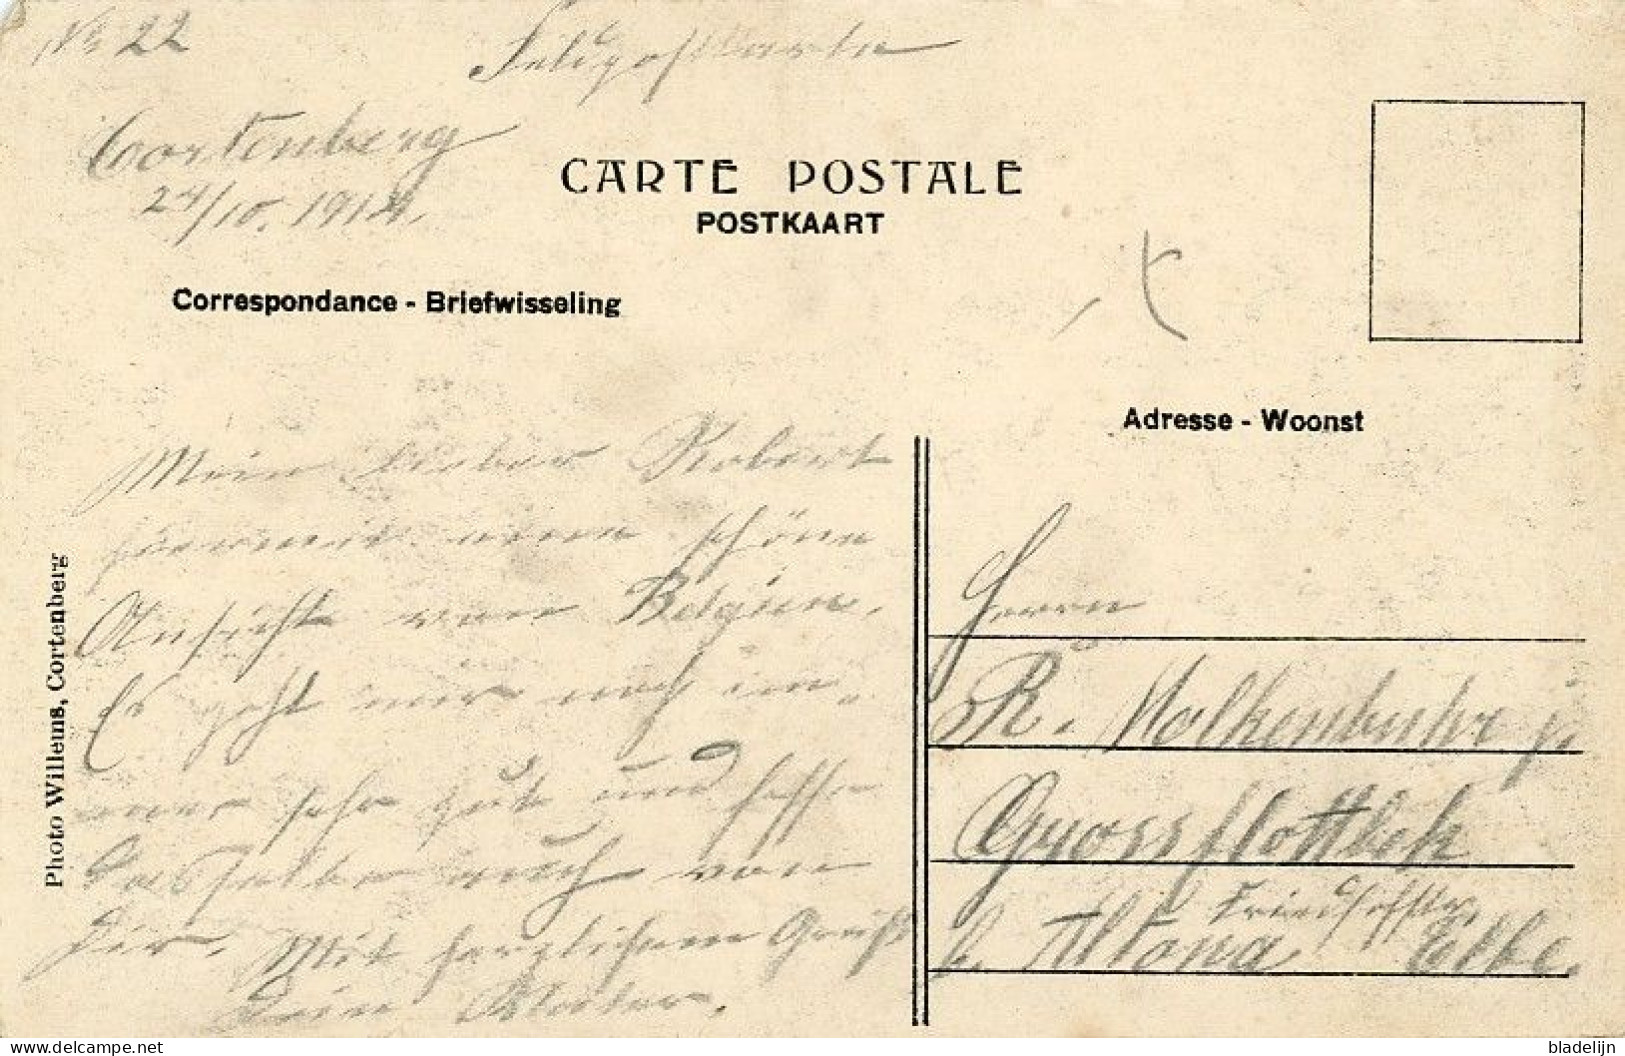 KORTENBERG (Vlaams-Brabant) - Zeer Zeldzame Postkaart Van Molen Vandoren Ca. 1910. Verzonden In 1914 Door Duitse Soldaat - Kortenberg